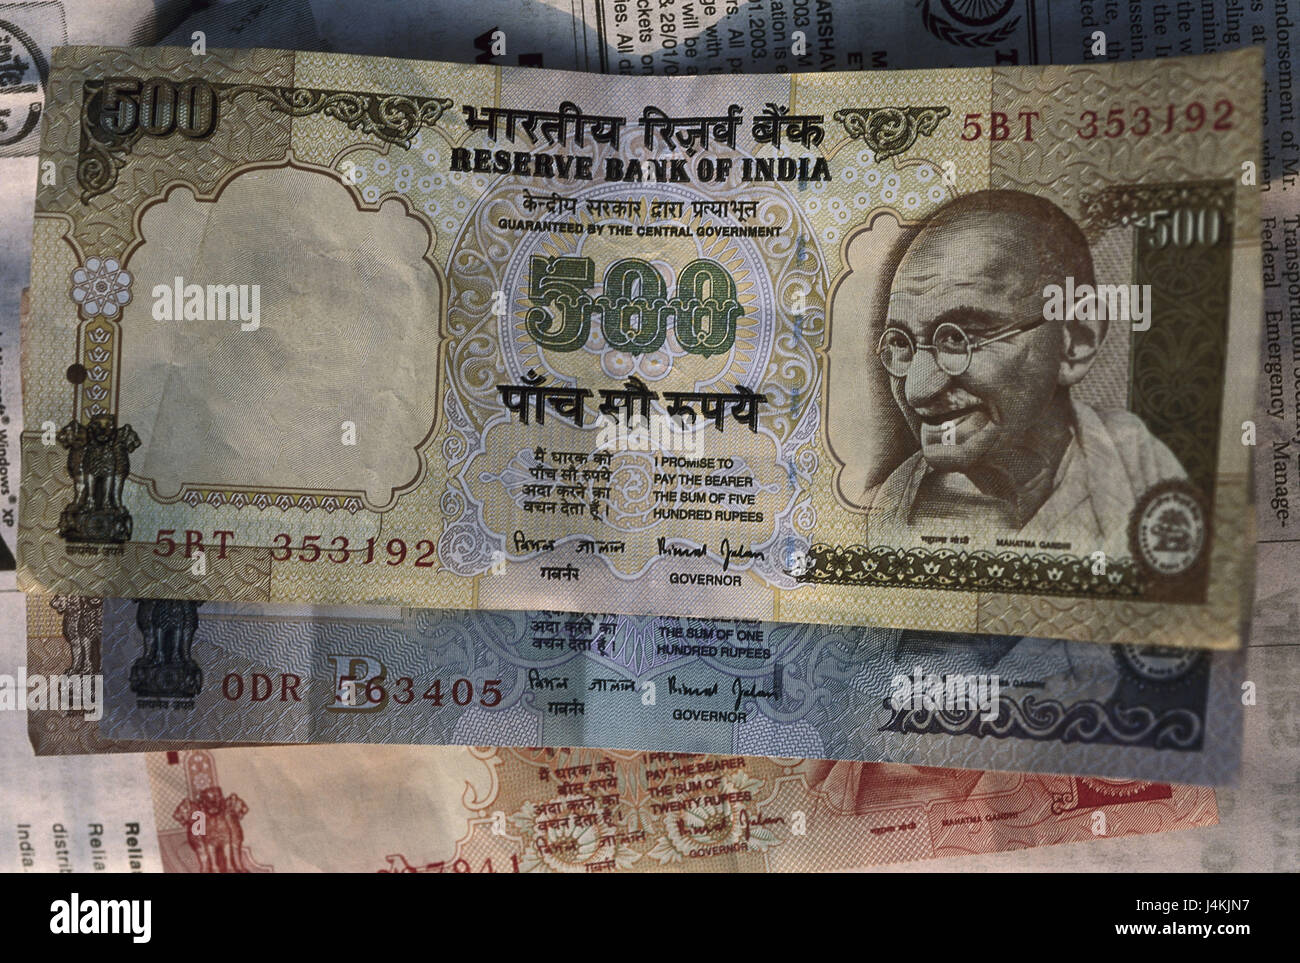 Indien Banknote 500 Rupies Asien Sudasien Hindi Bharat Wahrung Mahatma Gandhi Stillleben Objekt Im Indischen Notizen Banknoten Geldscheine Wert Zahlungsmittel Illustration Fotografie Stockfotografie Alamy